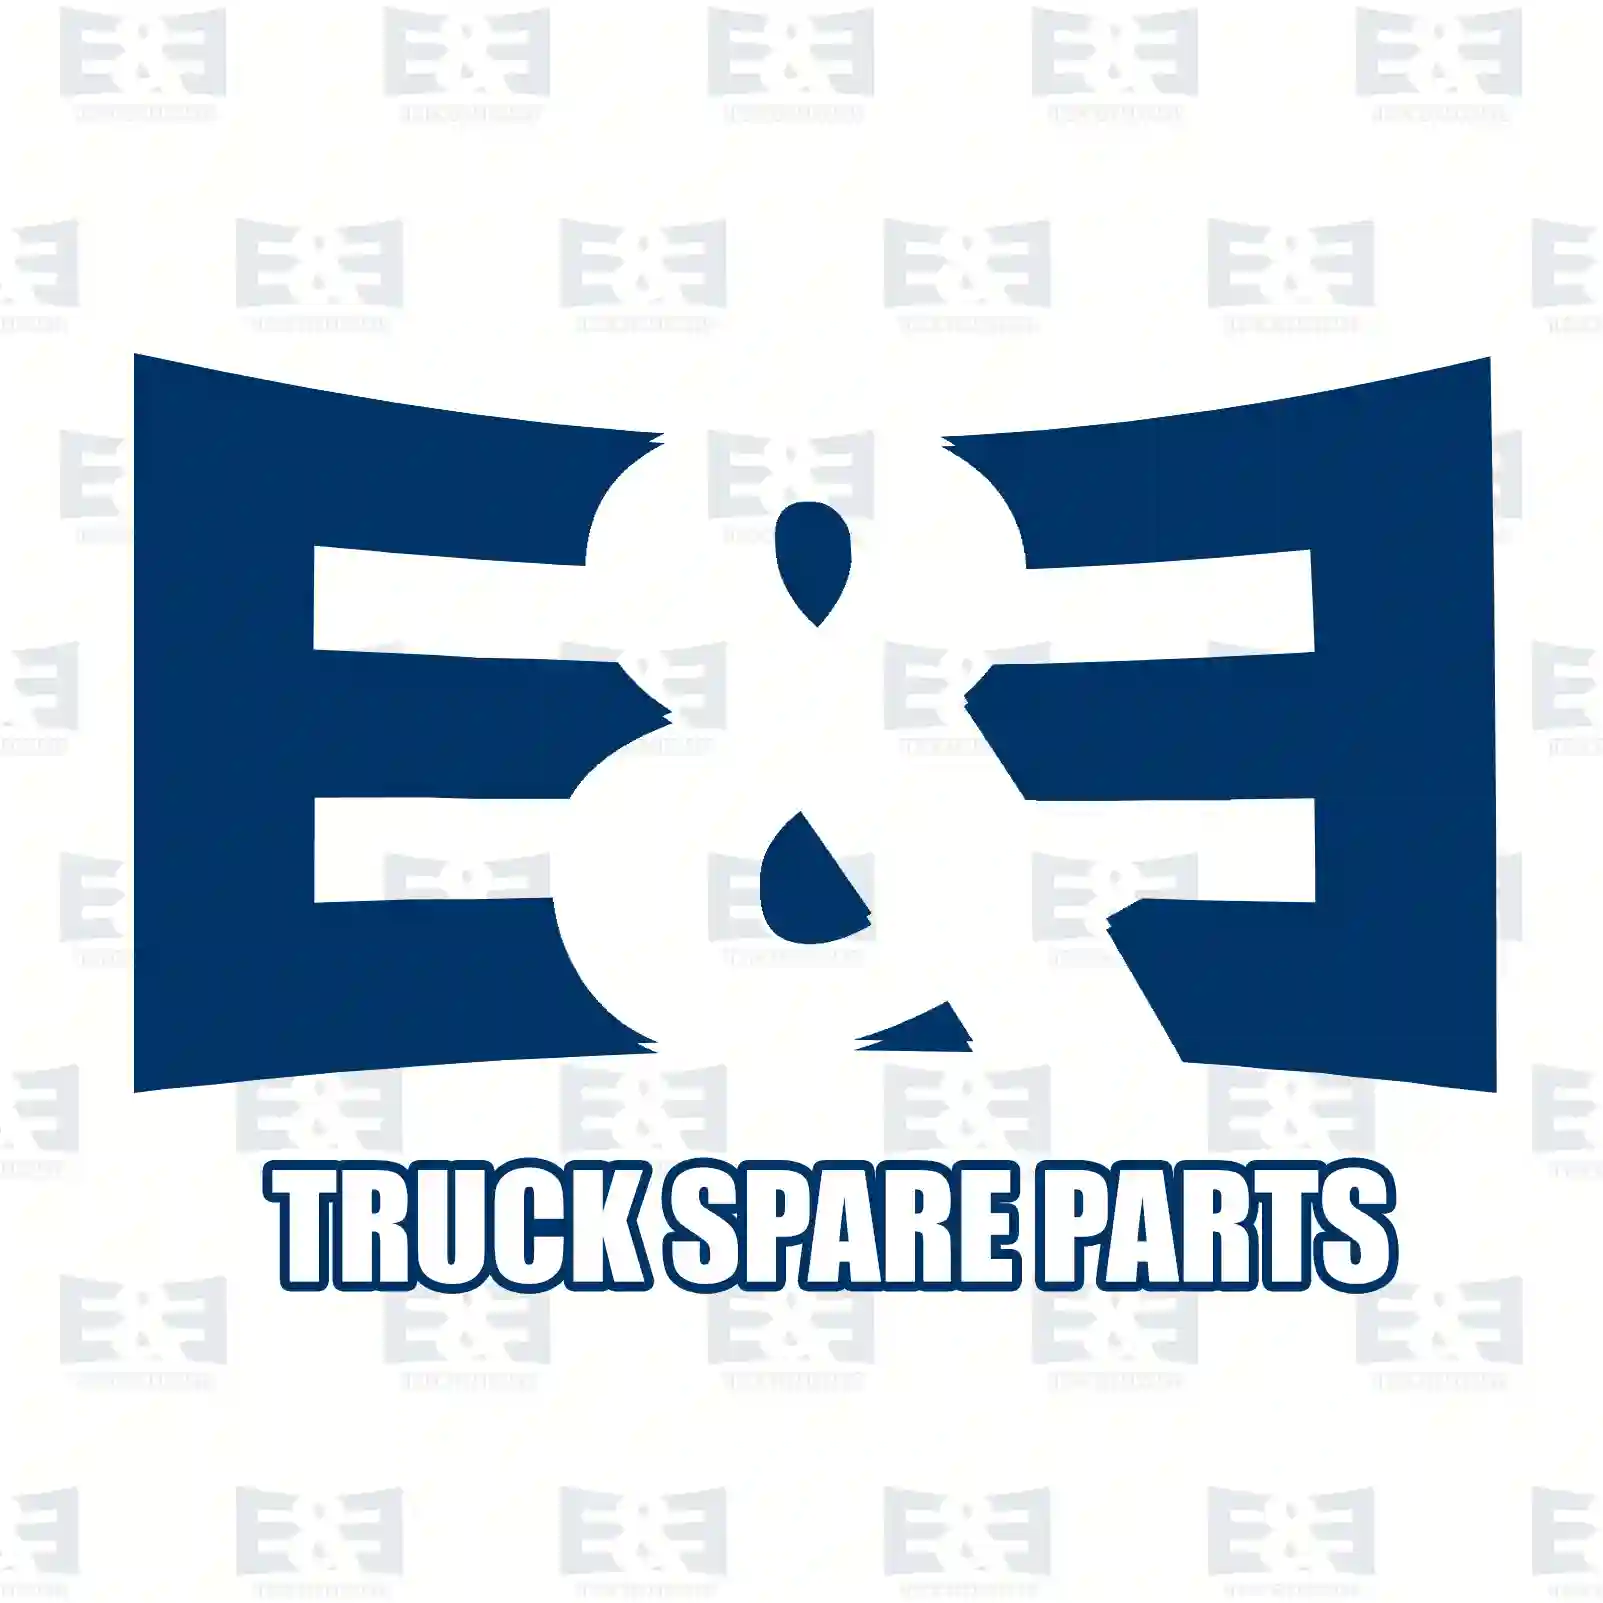 Clutch kit, 2E2288980, 81300059023, 81300059034, 81300059037 ||  2E2288980 E&E Truck Spare Parts | Truck Spare Parts, Auotomotive Spare Parts Clutch kit, 2E2288980, 81300059023, 81300059034, 81300059037 ||  2E2288980 E&E Truck Spare Parts | Truck Spare Parts, Auotomotive Spare Parts